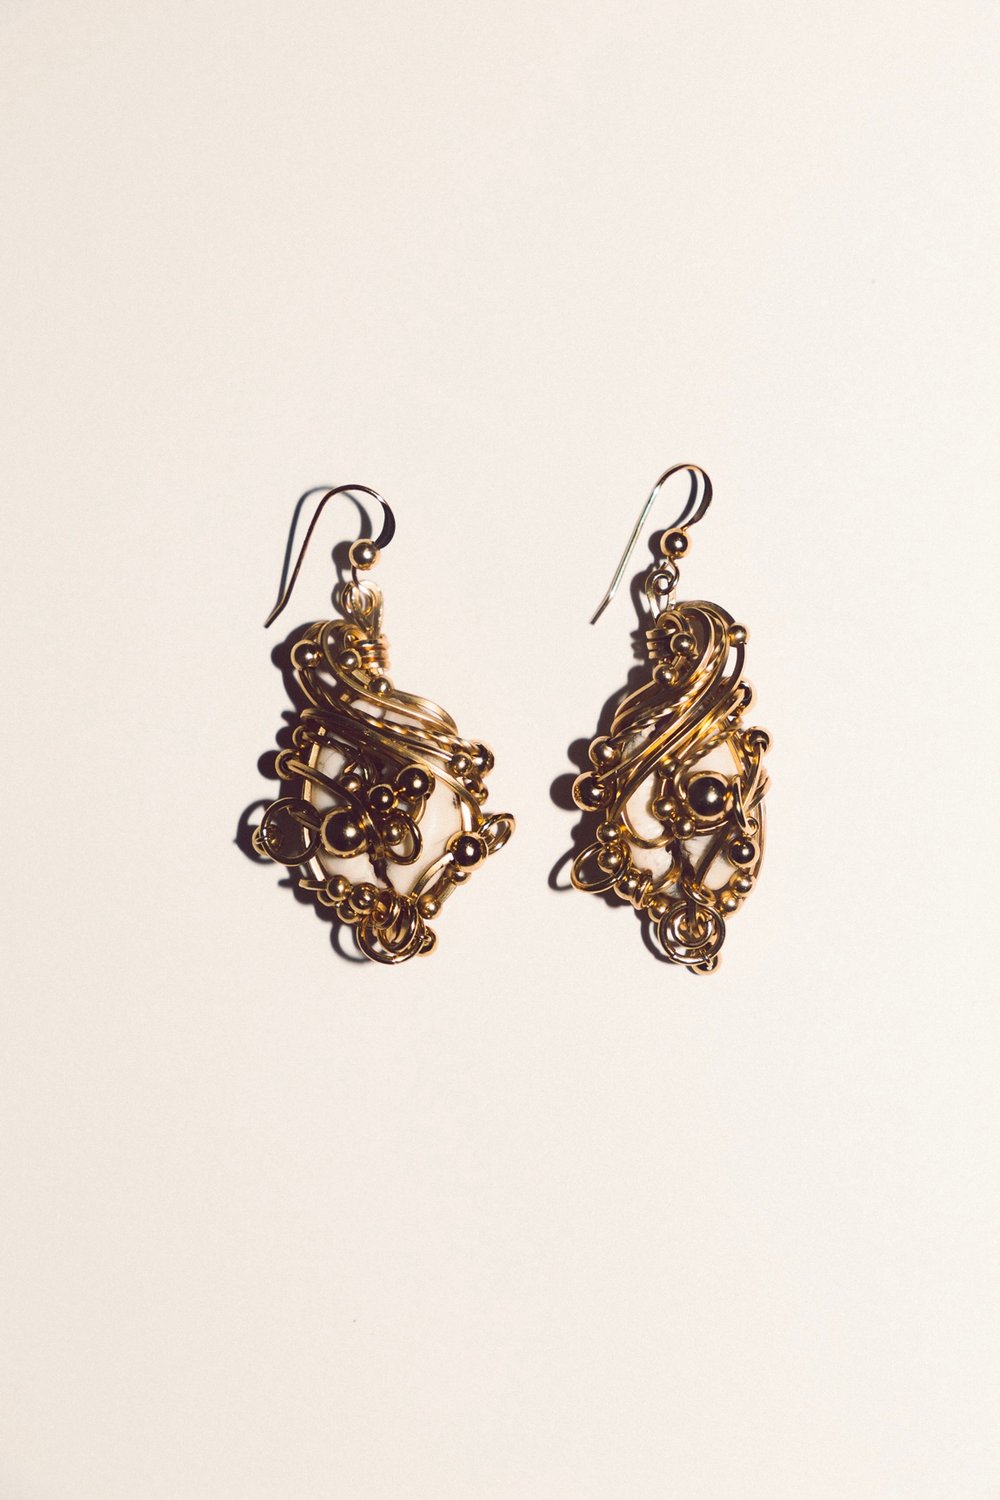 ⟢ Ocean's First Melody earrings ⟣